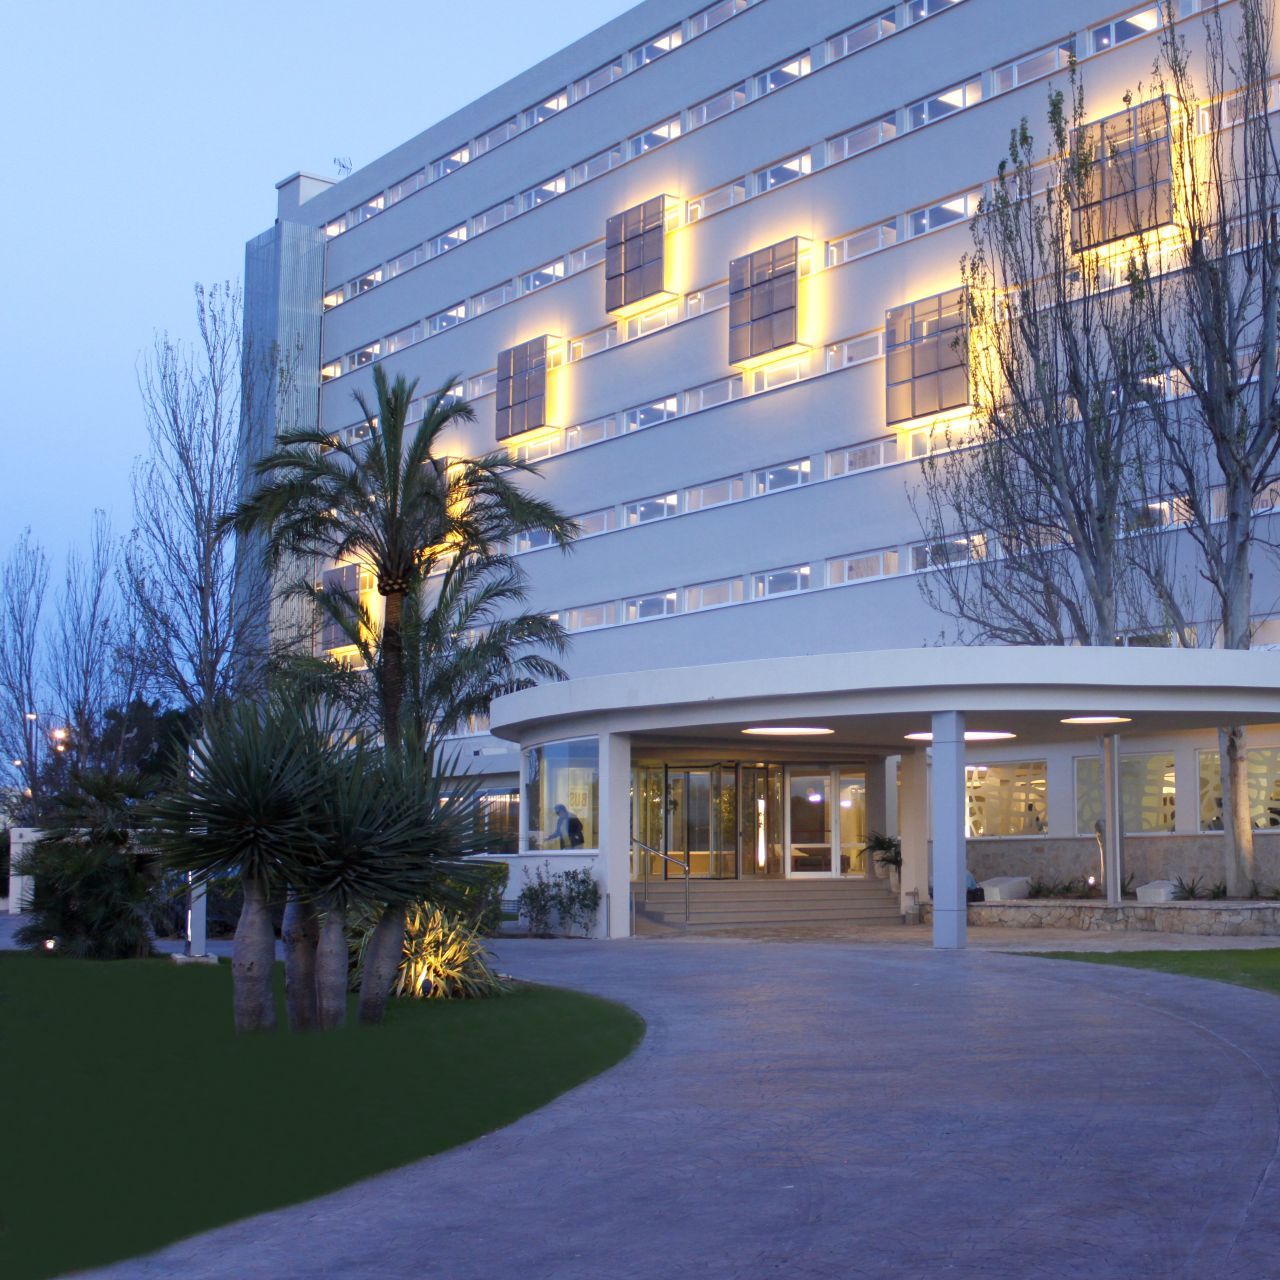 BG Java Hotel - Can Pastilla, Palma chez HRS avec services gratuits